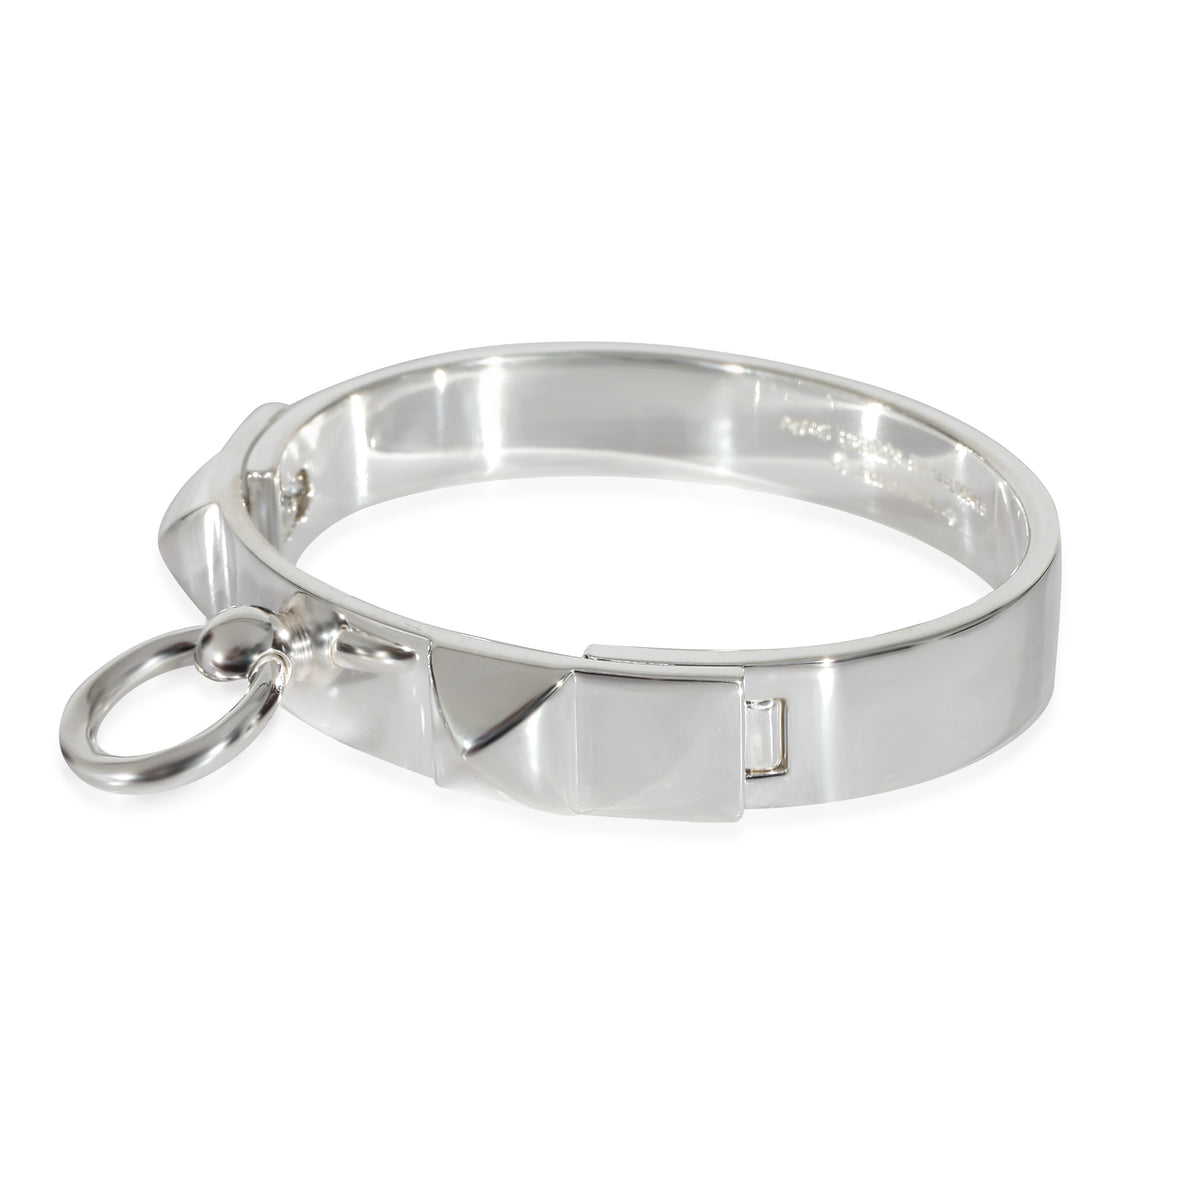 Hermès Sterling Silver Collier de Chien Bangle Bracelet S